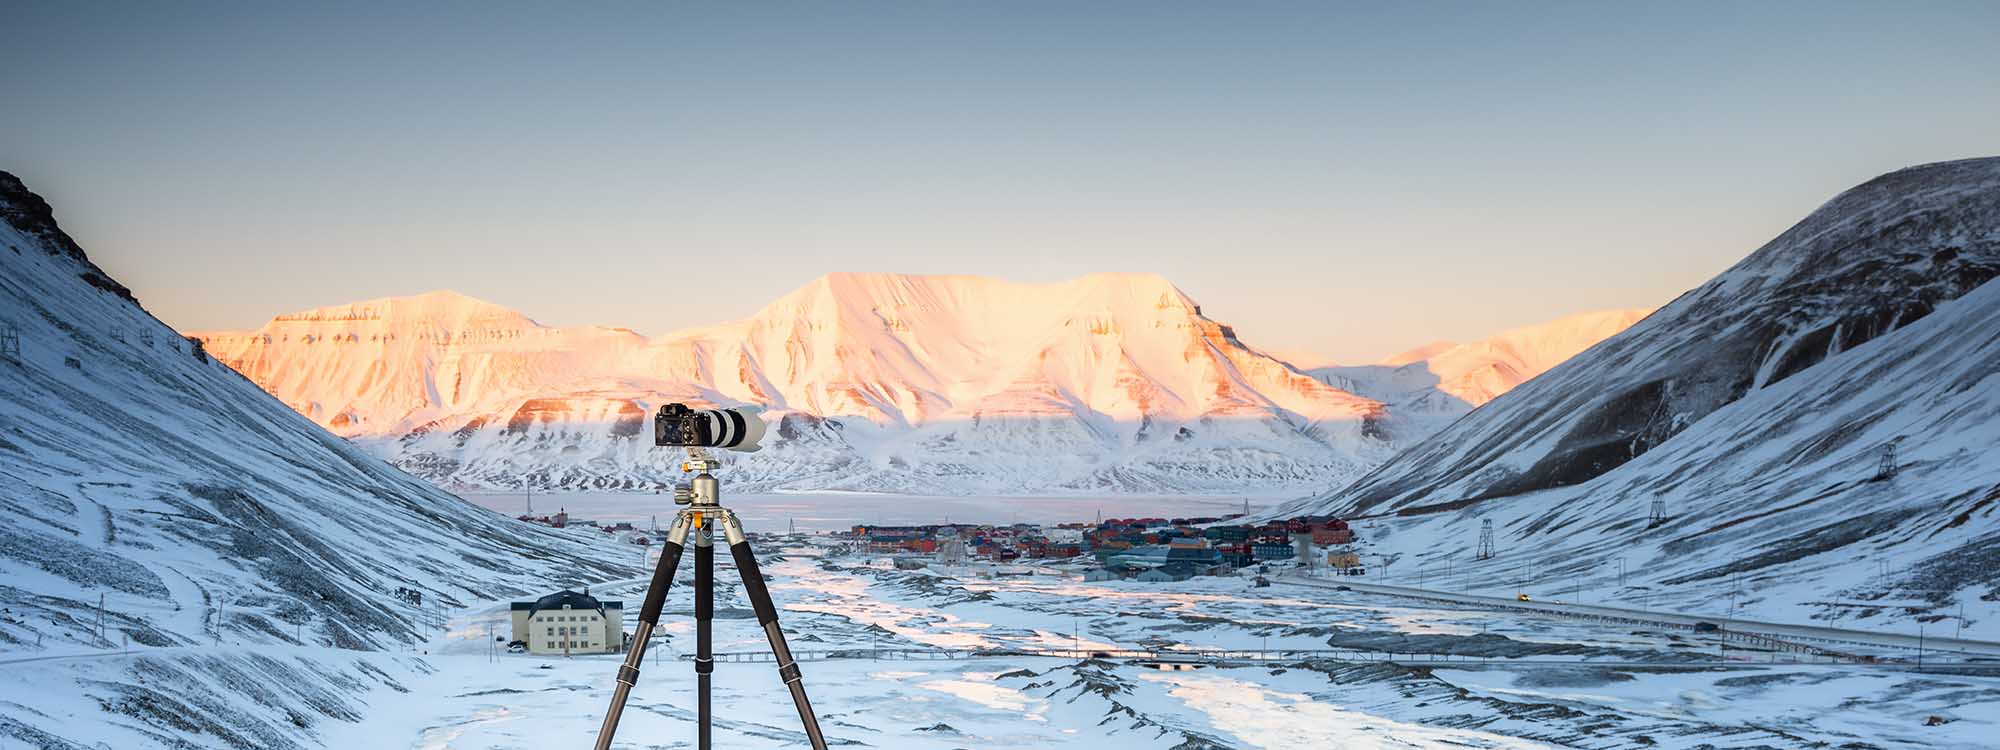 Arktisreise Fotografieren im Eis